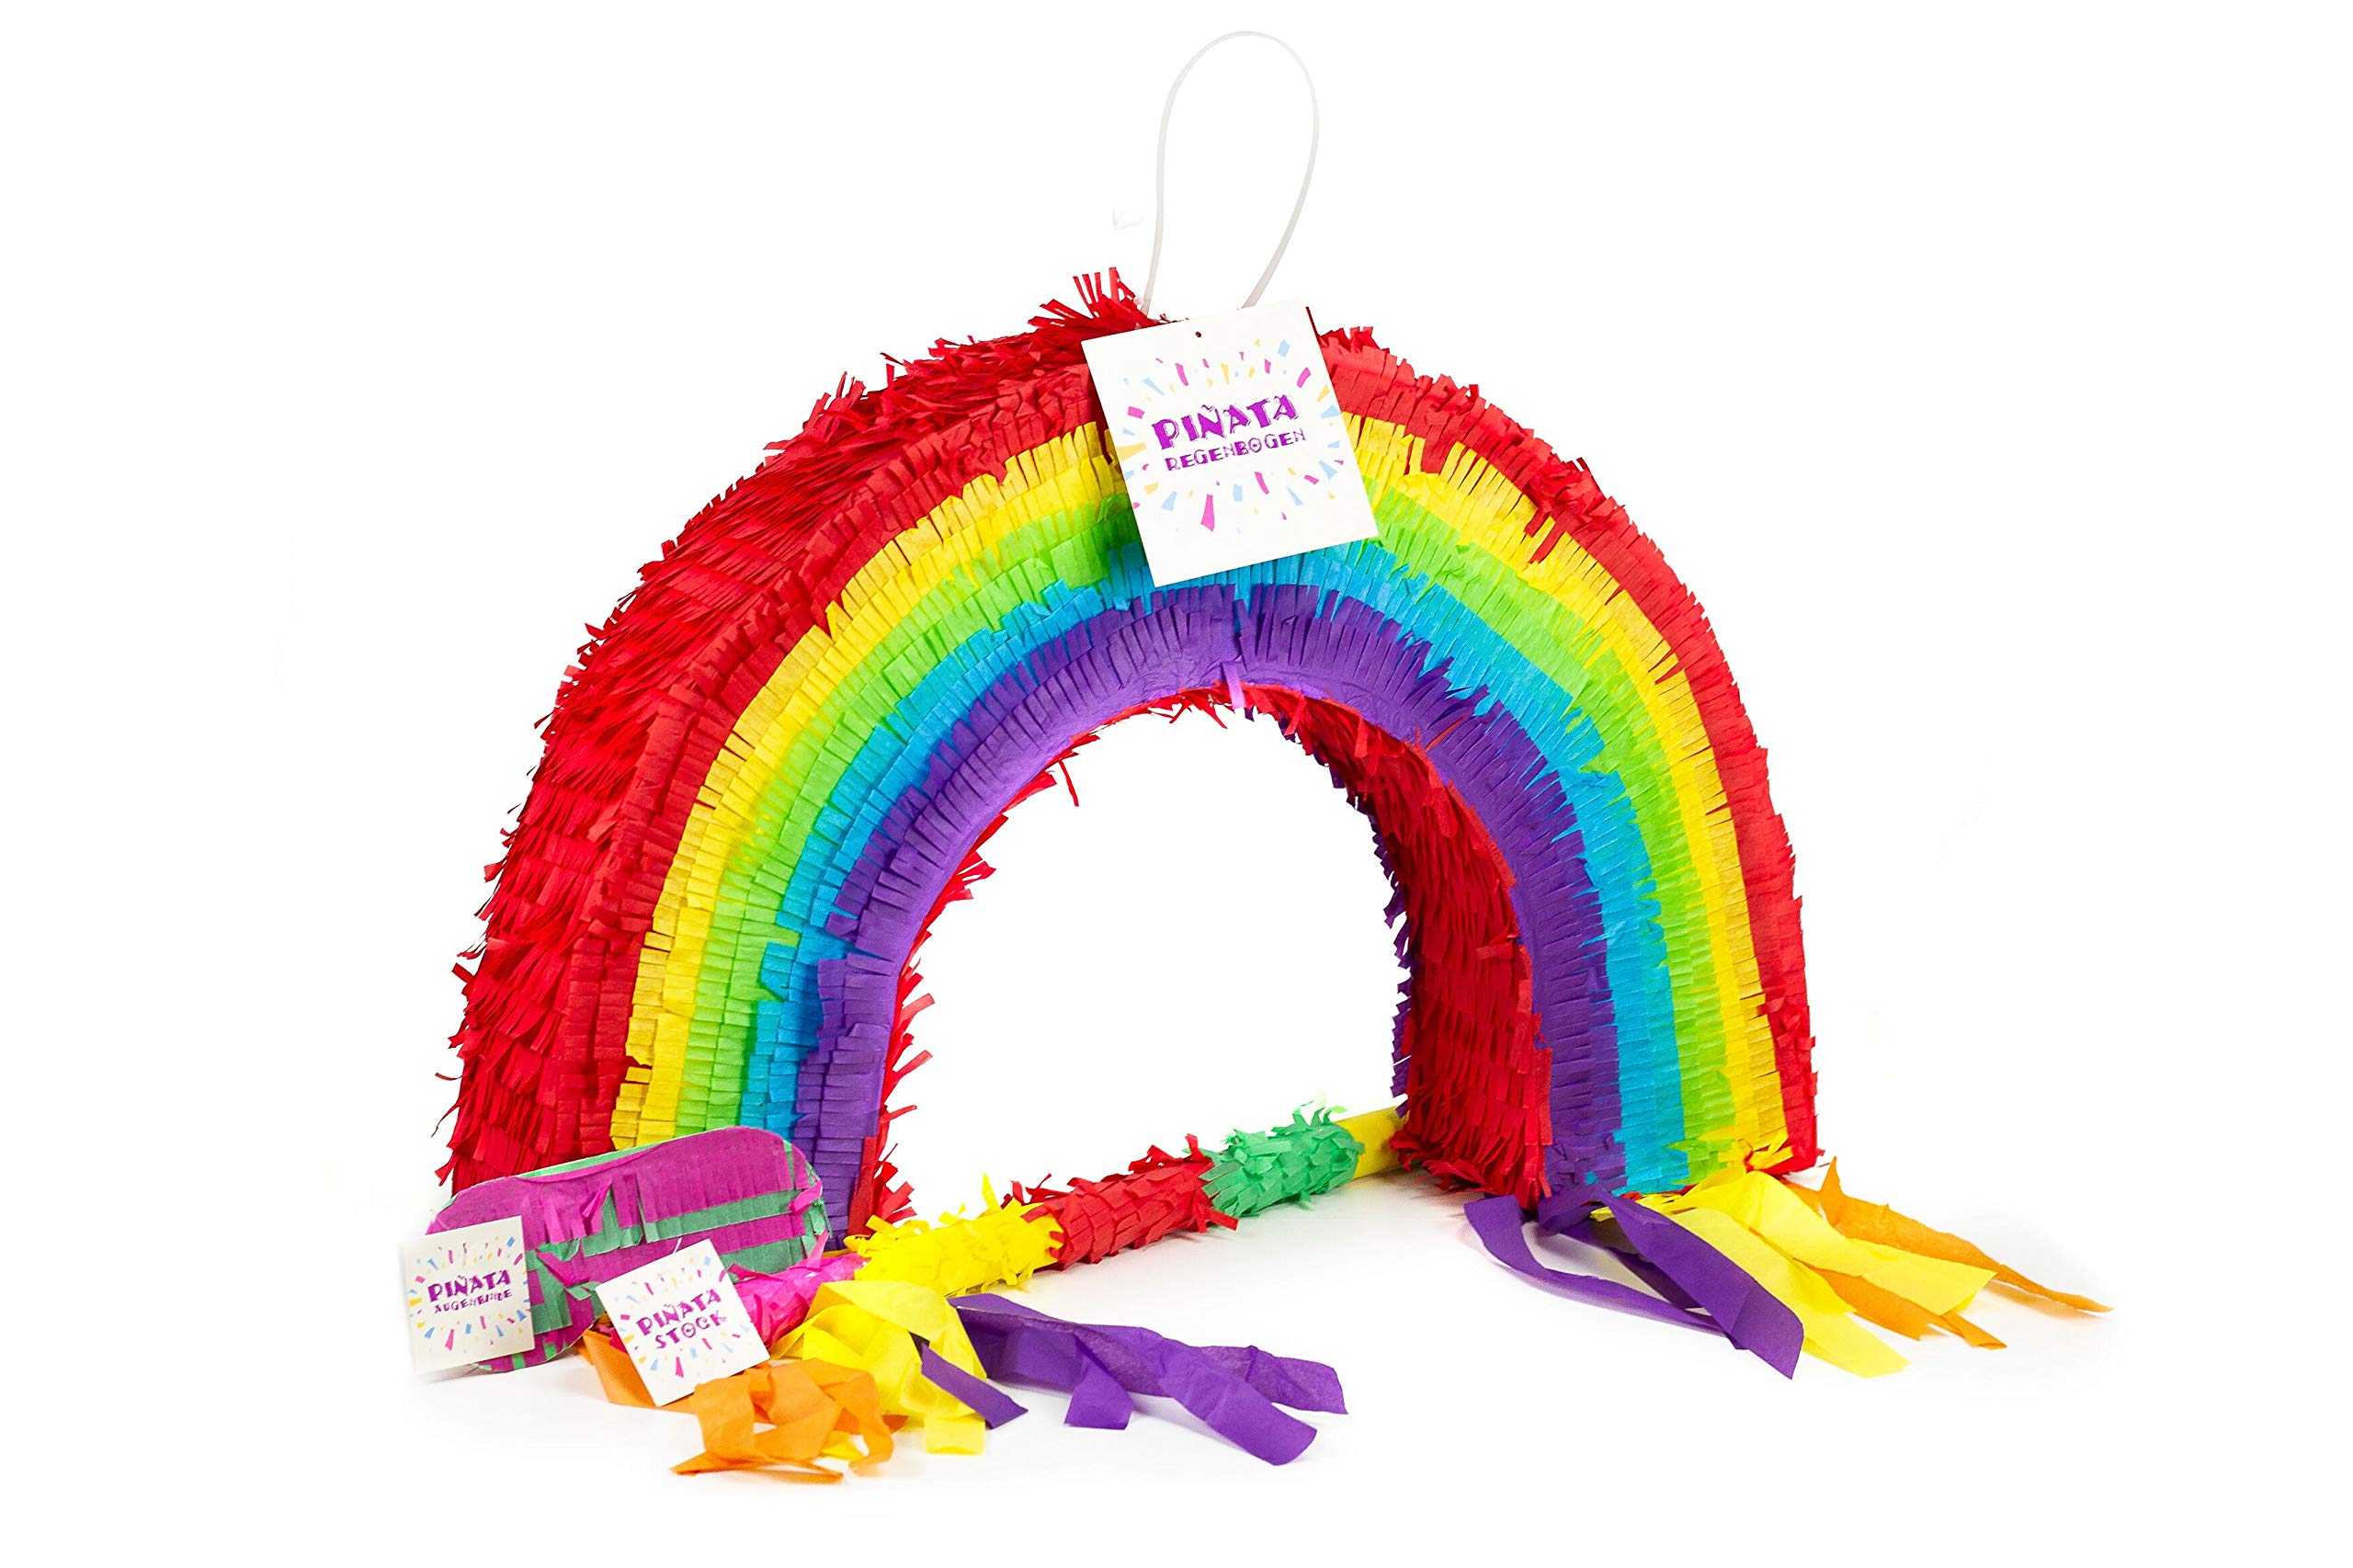 Trendario Regenbogen Pinata Set, Pinjatta + Stab + Augenmaske, Ideal zum Befüllen mit Süßigkeiten und Geschenken - Piñata Regenbogen für Kindergeburtstag Spiel, Geschenkidee, Party, Hochzeit